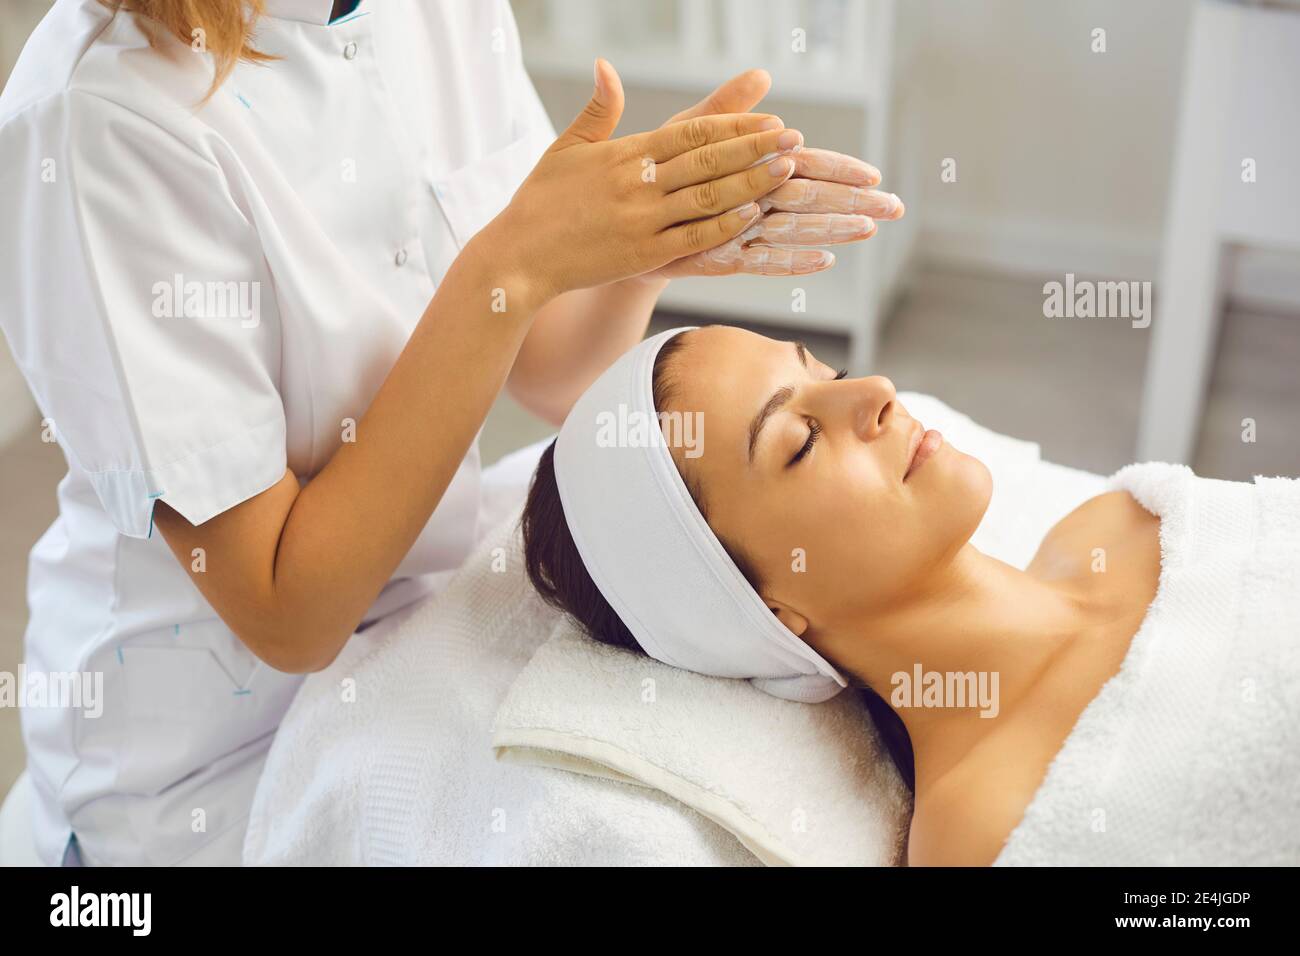 Mujer dermatólogo frotando crema hidratante para aplicar onvwomans cara después cuidado de la piel Foto de stock